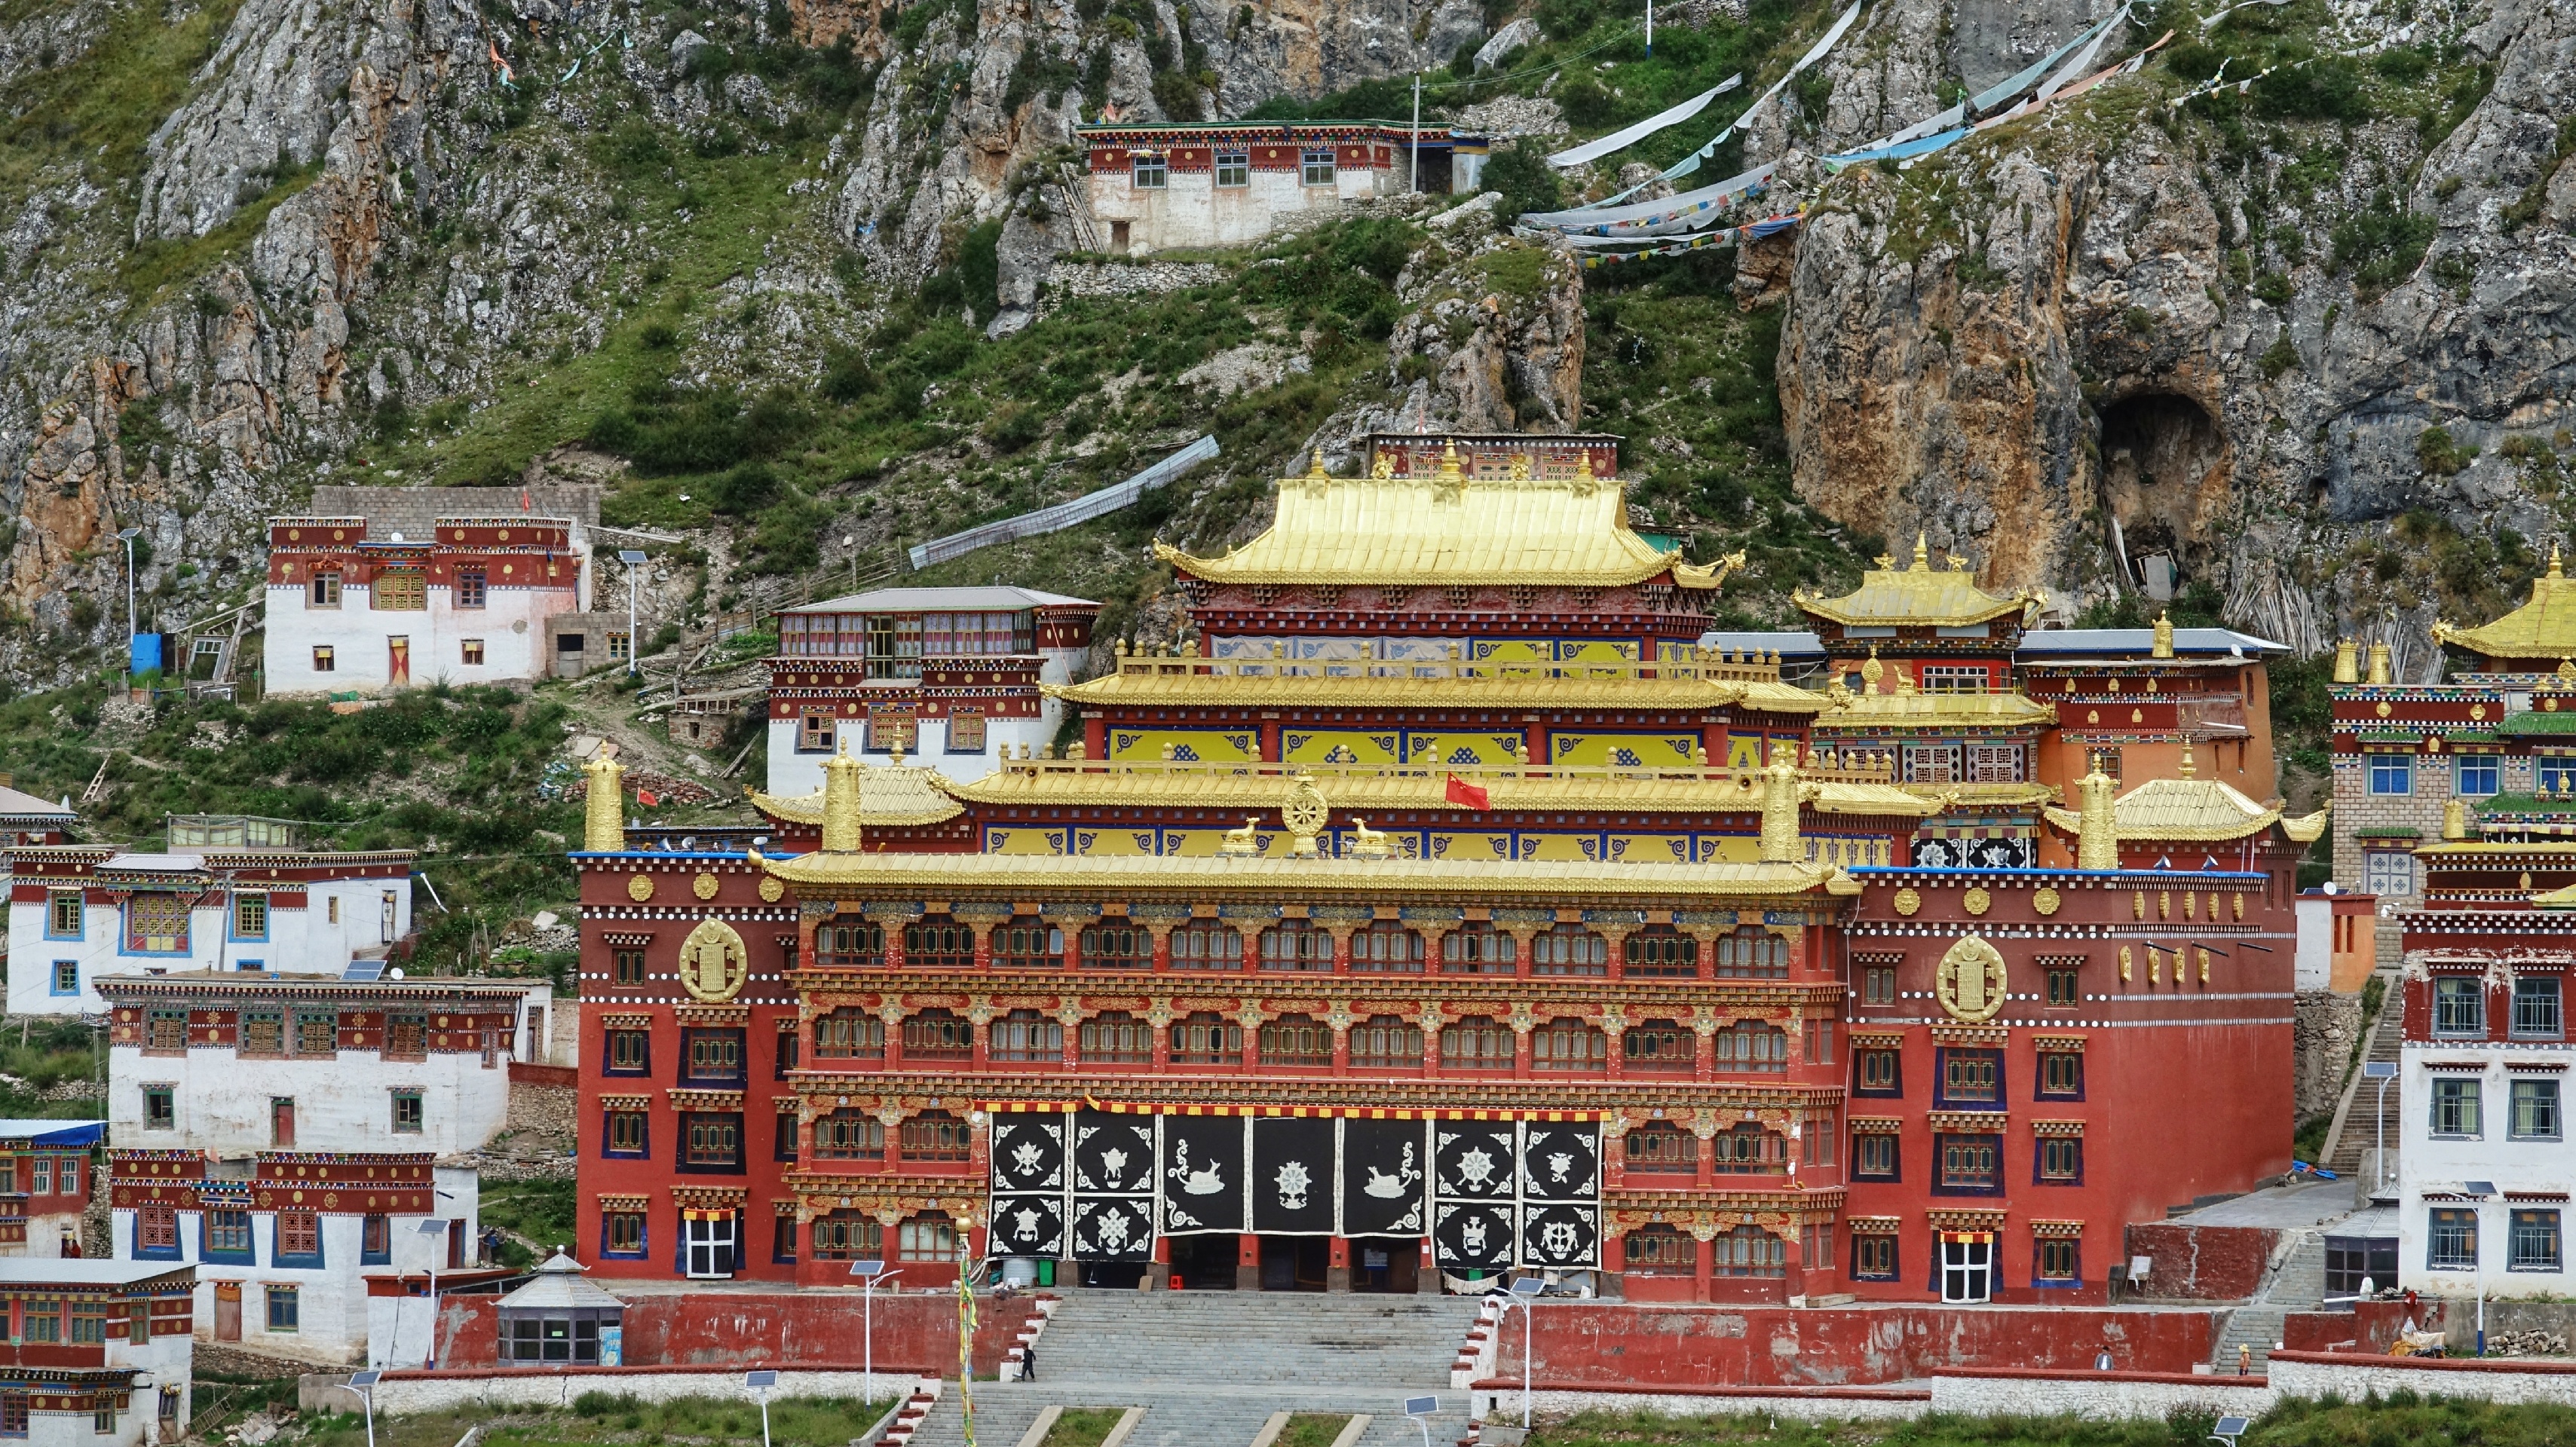 2020年9月自驾孜珠寺-西藏海拔最高的寺院之一